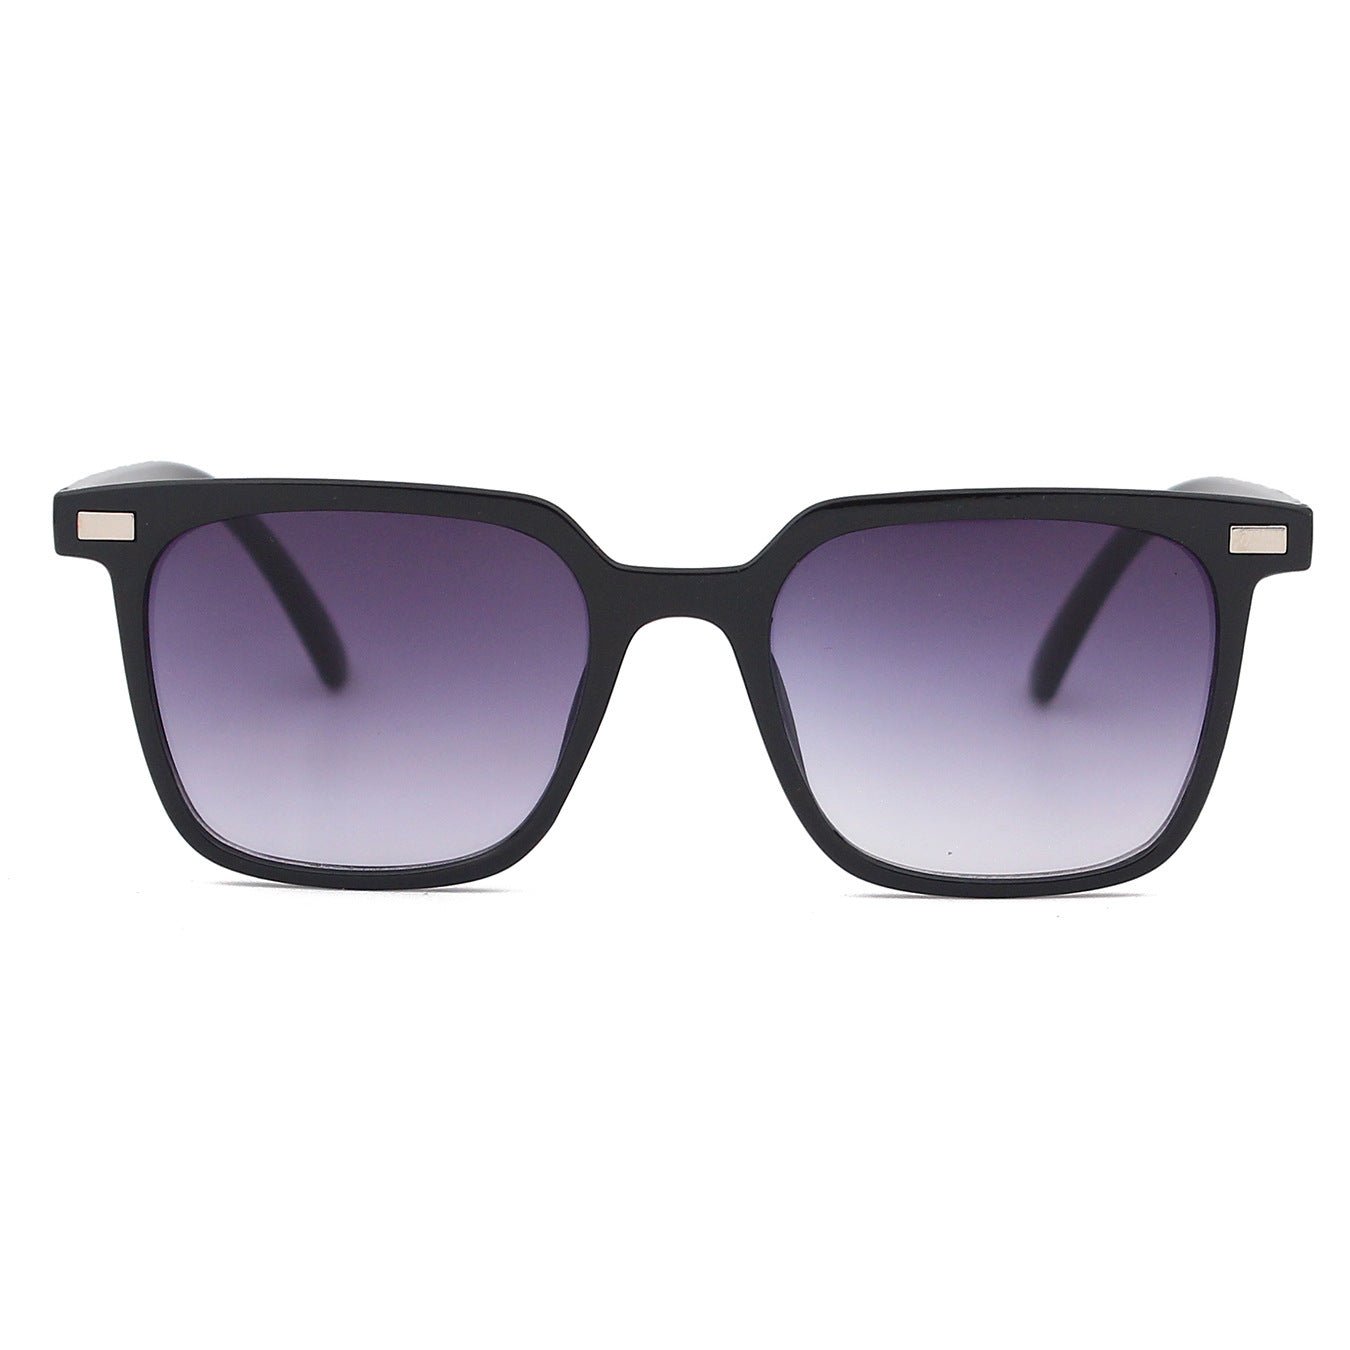 Glasses Sunglasses Retro Multicolored Frame Rice Nail Sunglasses